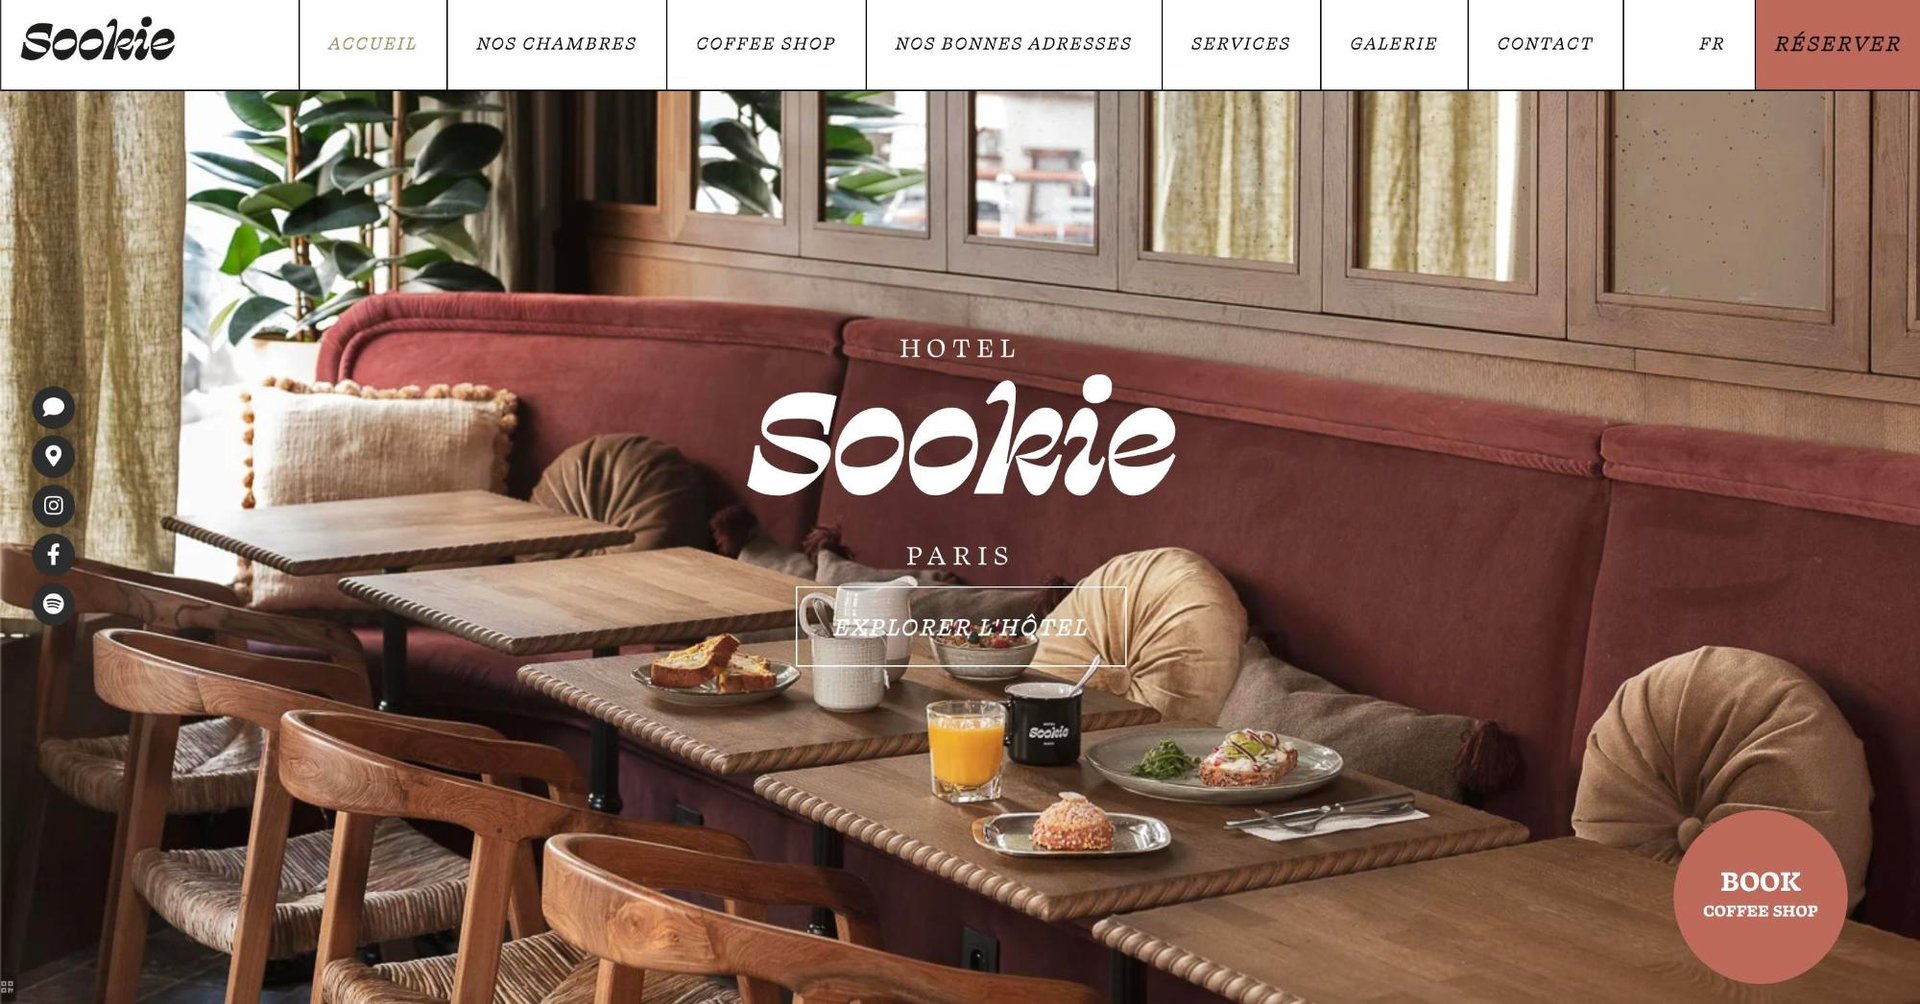 MMCréation Agency | Portfolio Sookie Hotel